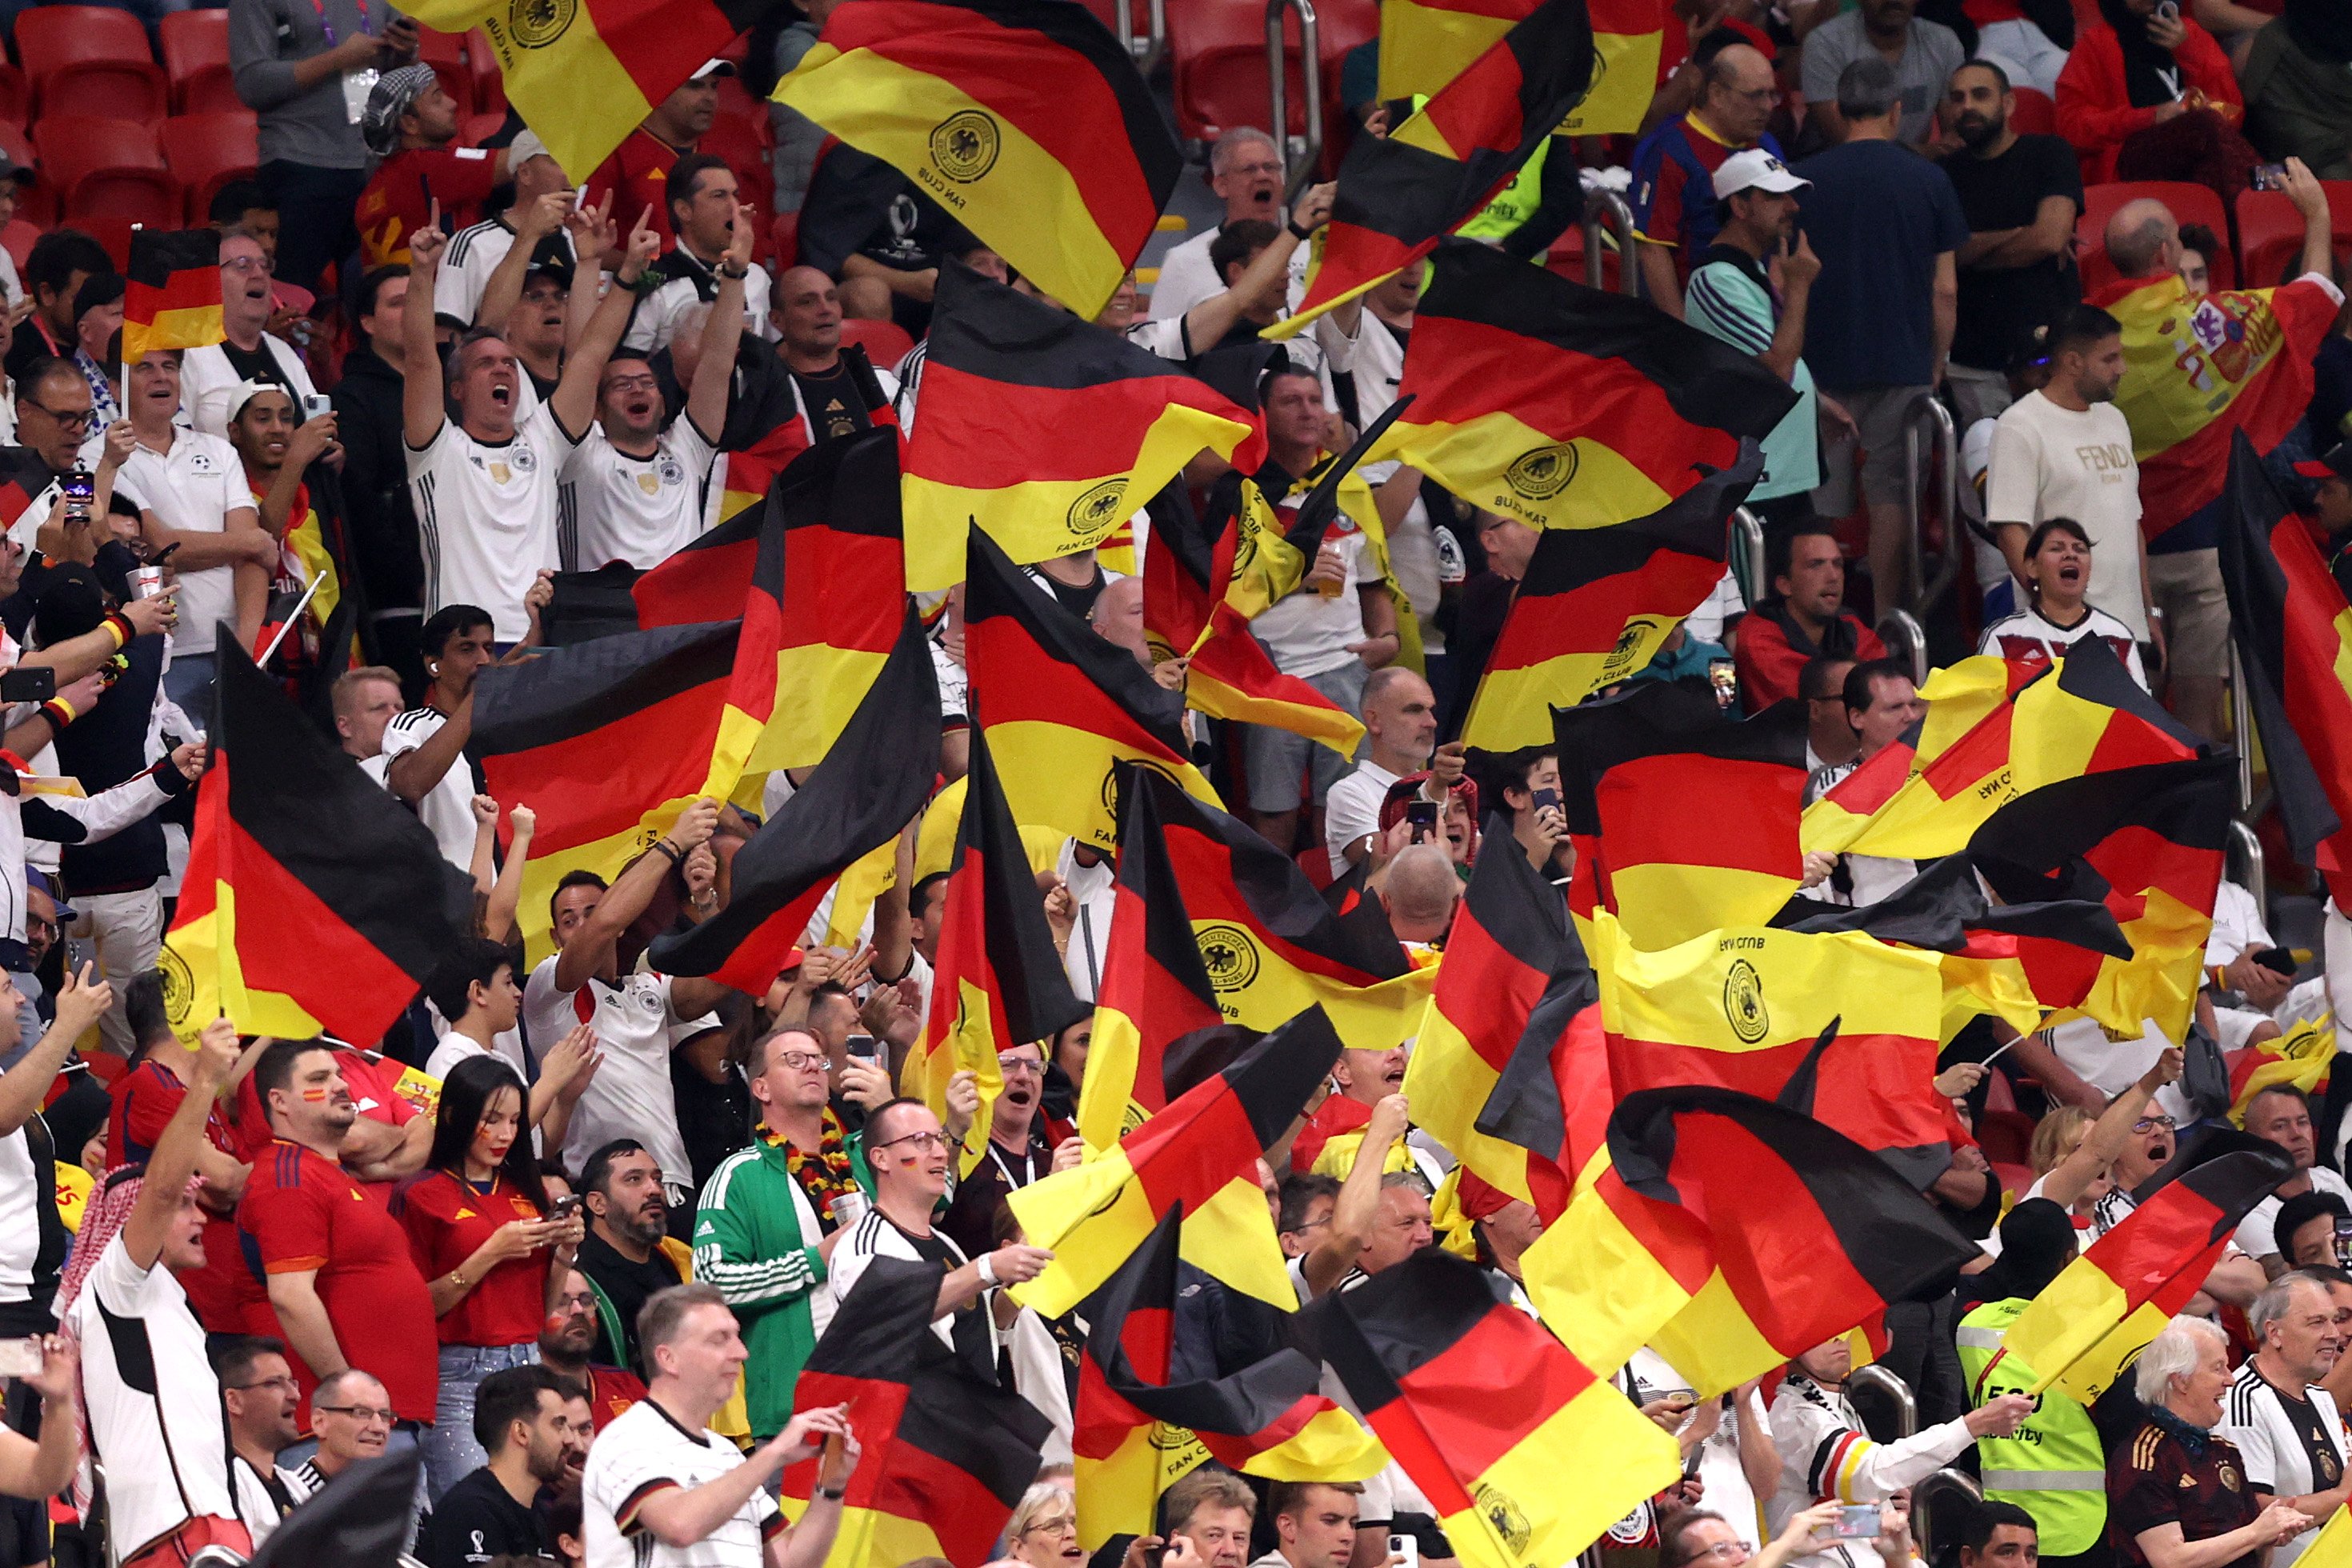 A Alemanha está empatada em primeiro lugar com 3 títulos (1972, 1980 e 1996); o time também foi 3 vezes vice e 3 vezes semifinalista